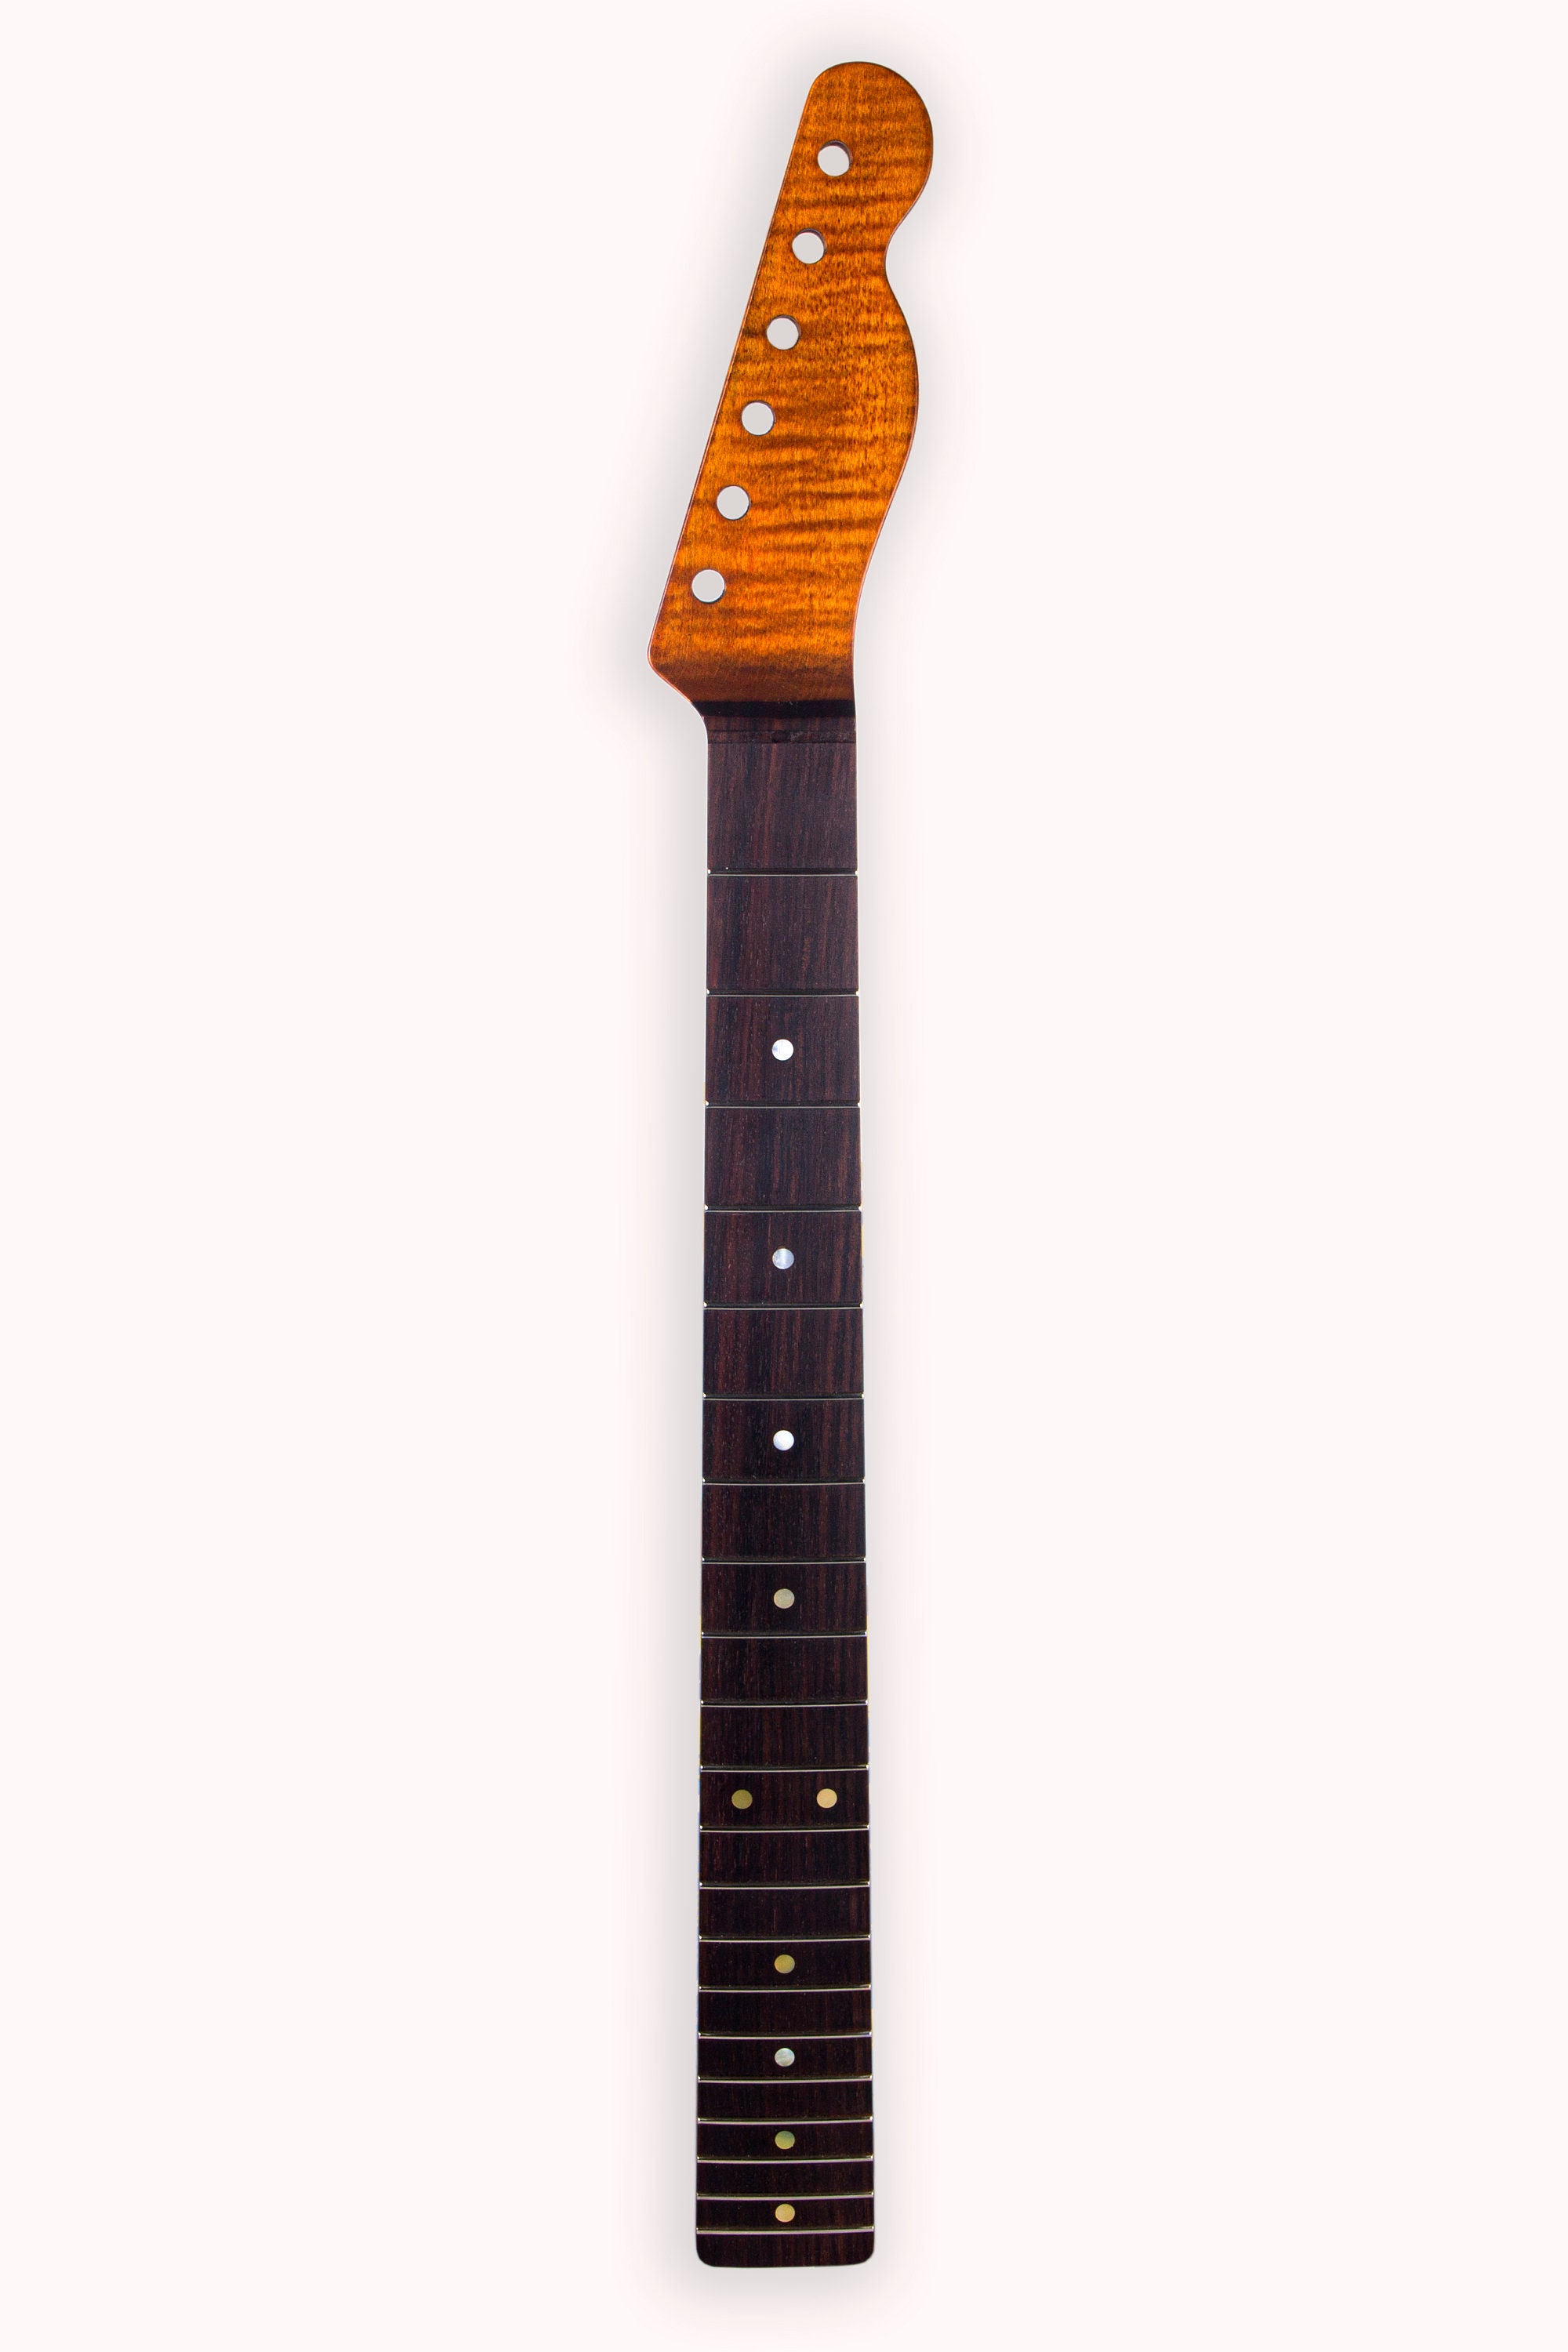 高級ブランド Mighty USA Mite for Vintage the Amber Mite Neck sale Mighty for  Fender Necks Strat， Indian in Rosewood Fingerboard